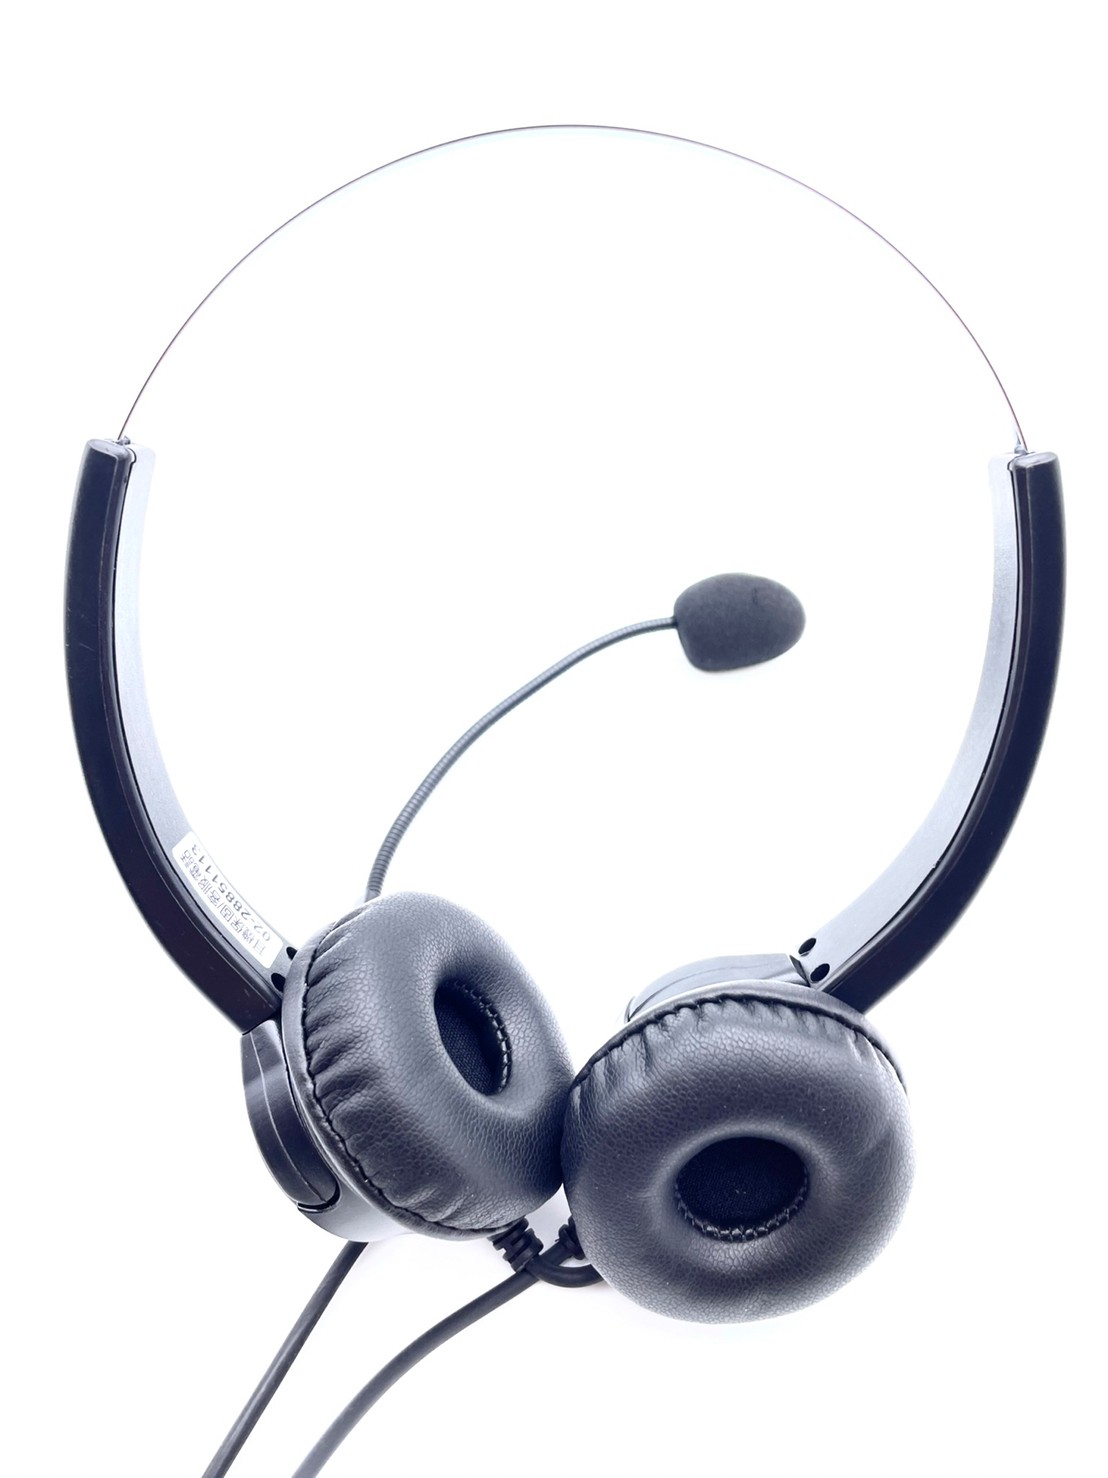 安立達電話耳機麥克風 雙耳 總機電話耳機 當日配送電話耳機 商用電話耳機